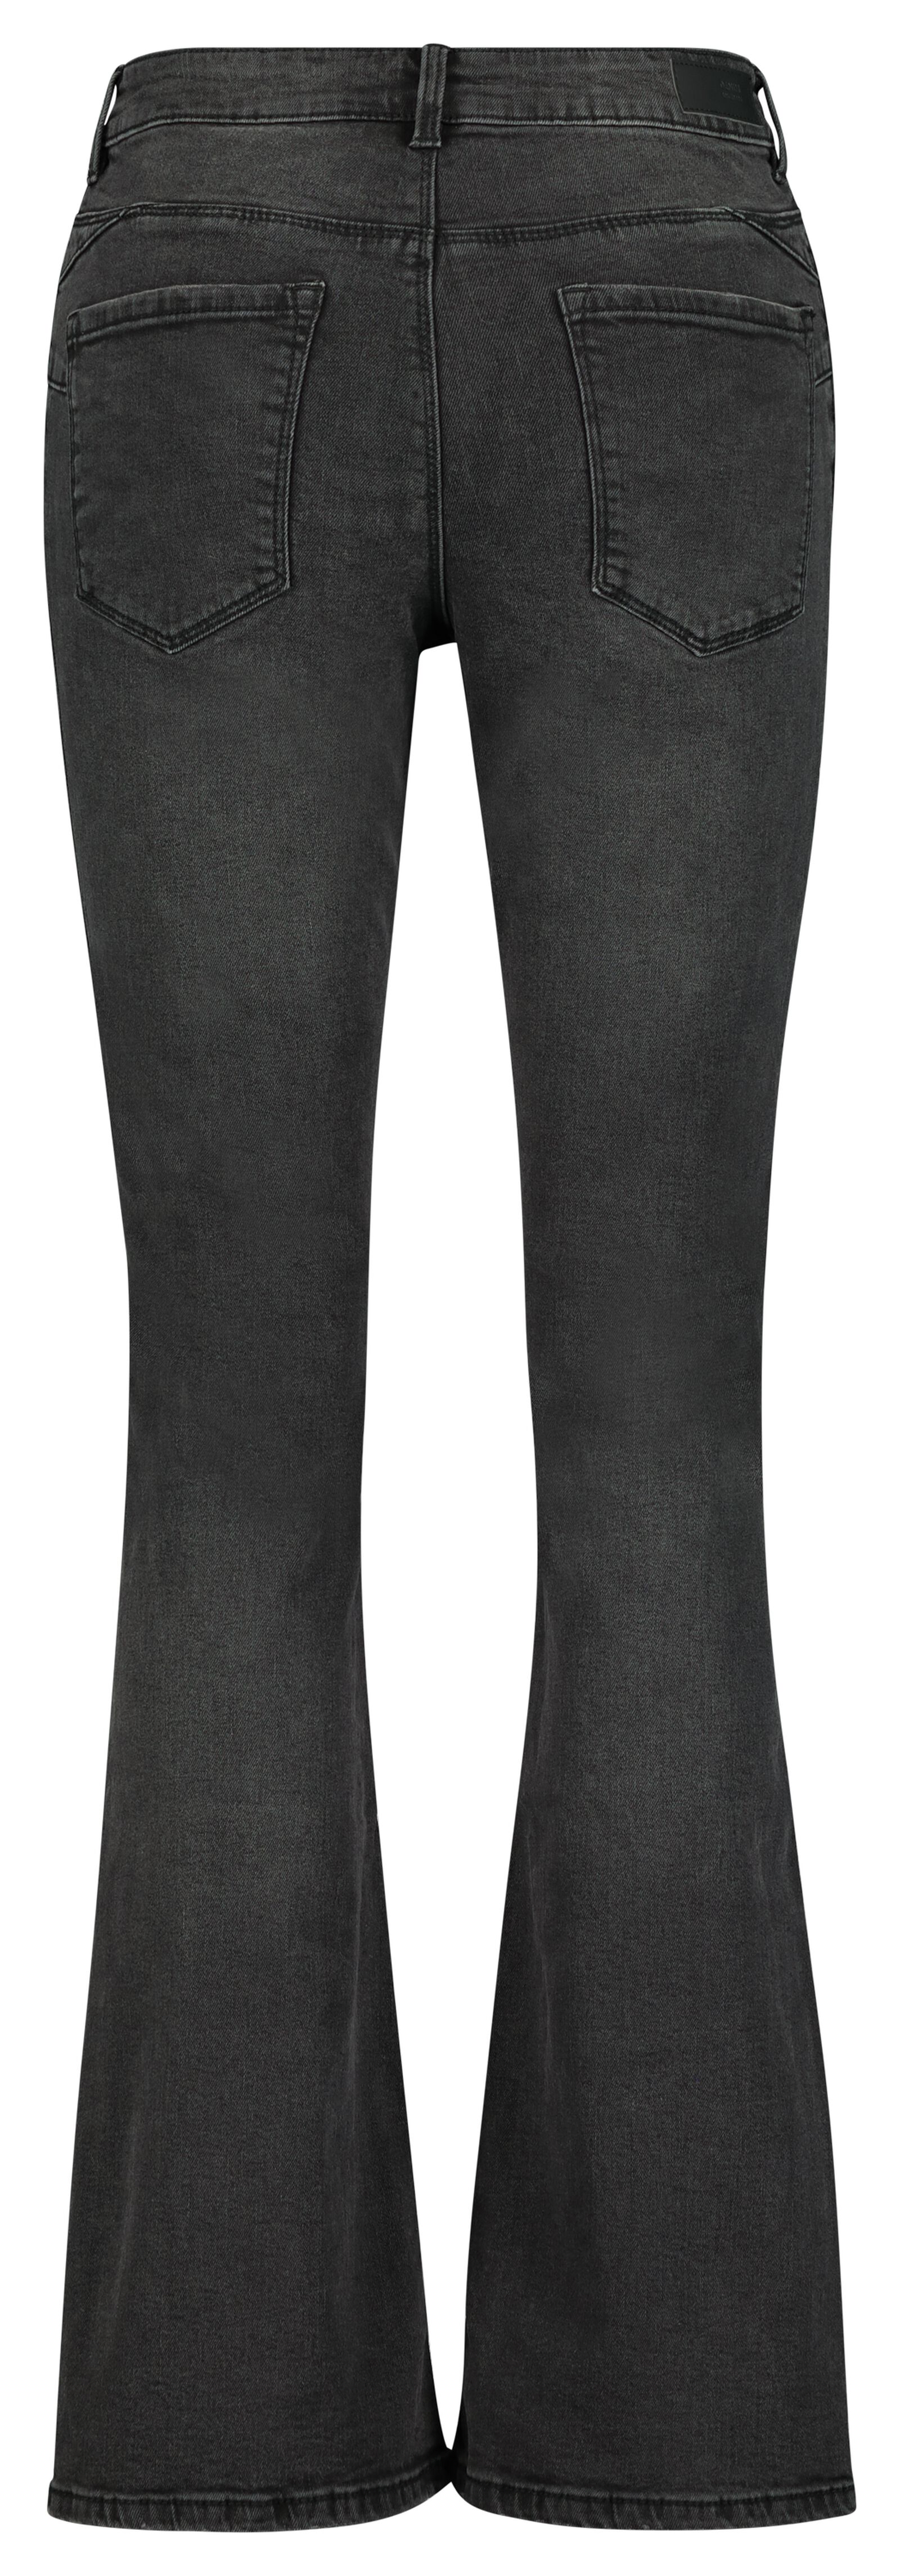 dames jeans bootcut shaping fit zwart 36 - 36291746 - HEMA